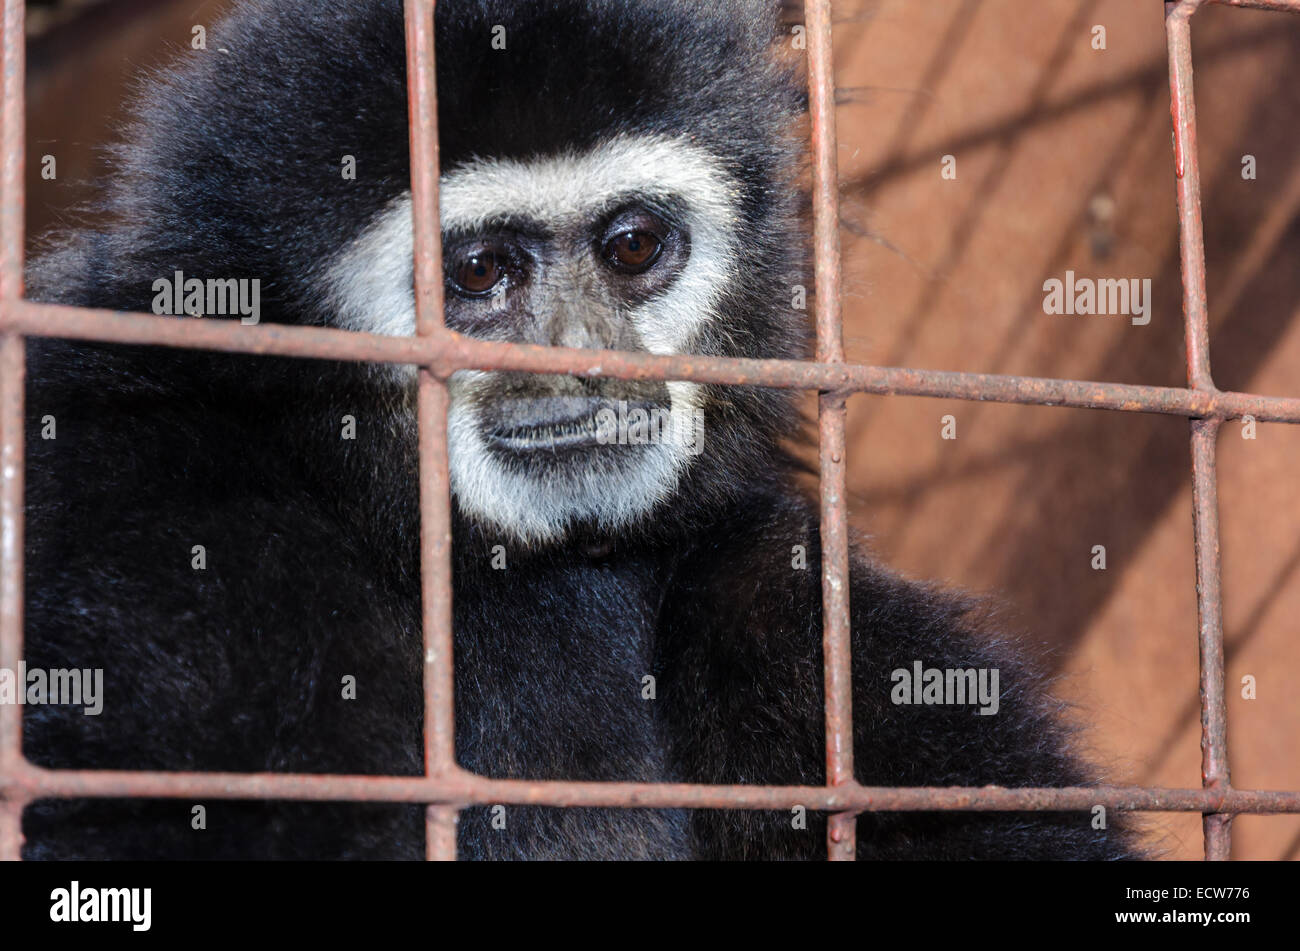 Gesicht und Augen niedergeschlagen von White-handed Gibbon (Hylobates Lar) in einem Käfig. Das Problem der illegalen Wildtierhandel Stockfoto